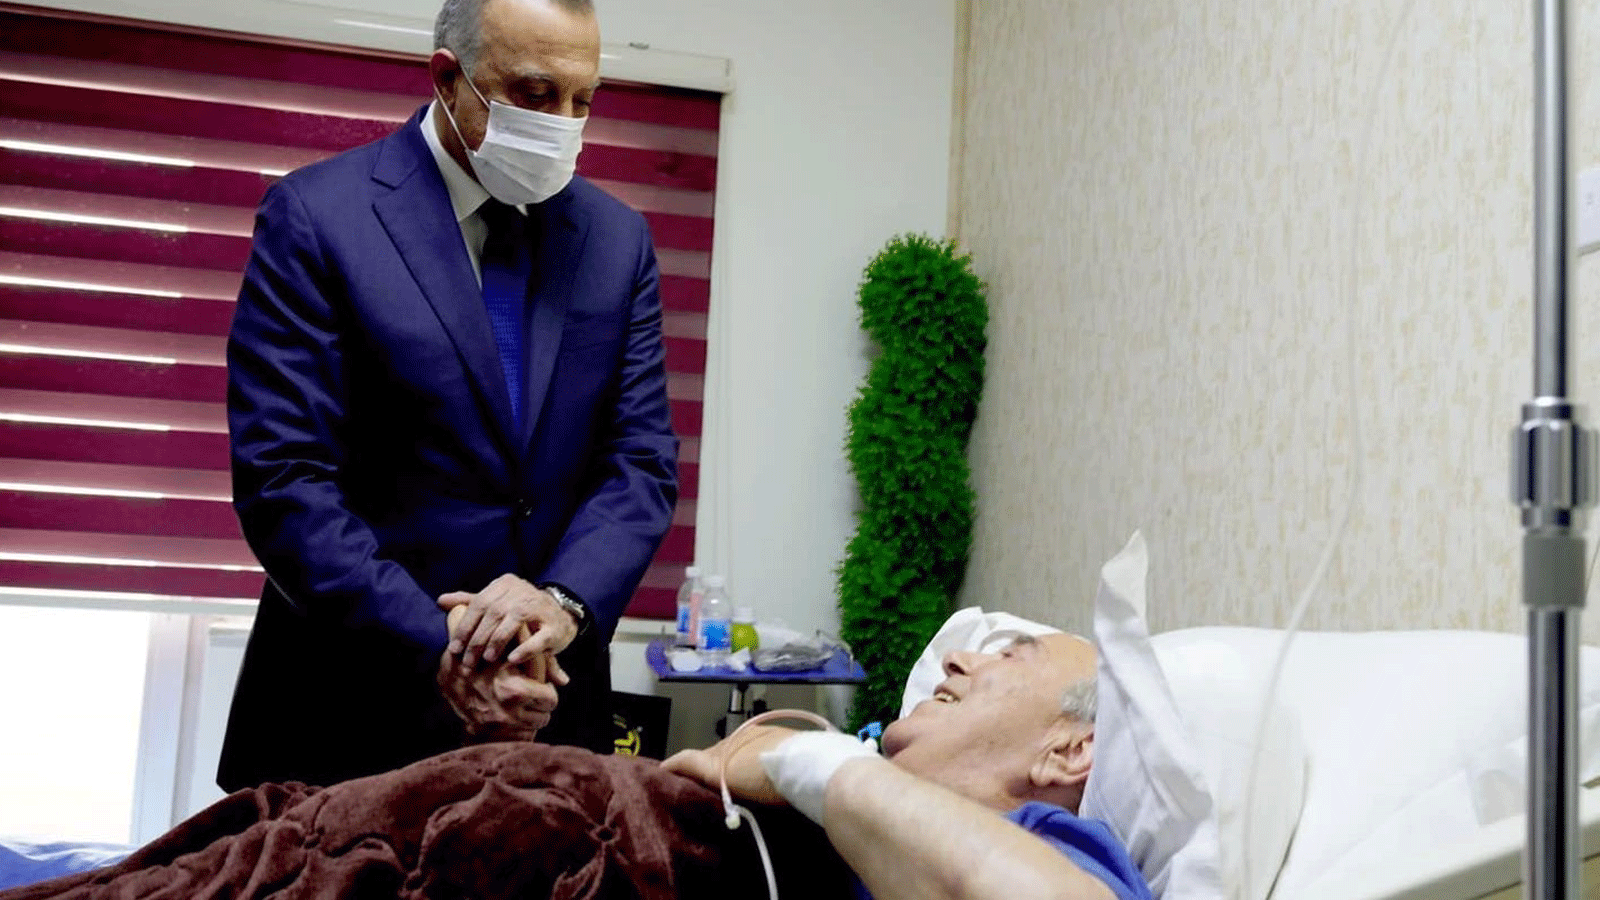  الكاظمي مطمئناً على صحة علاوي بمستشفى ابن سينا في بغداد حيث يعالج. الأحد 3 نيسان\ أبريل 2022 (مكتبه الاعلامي)